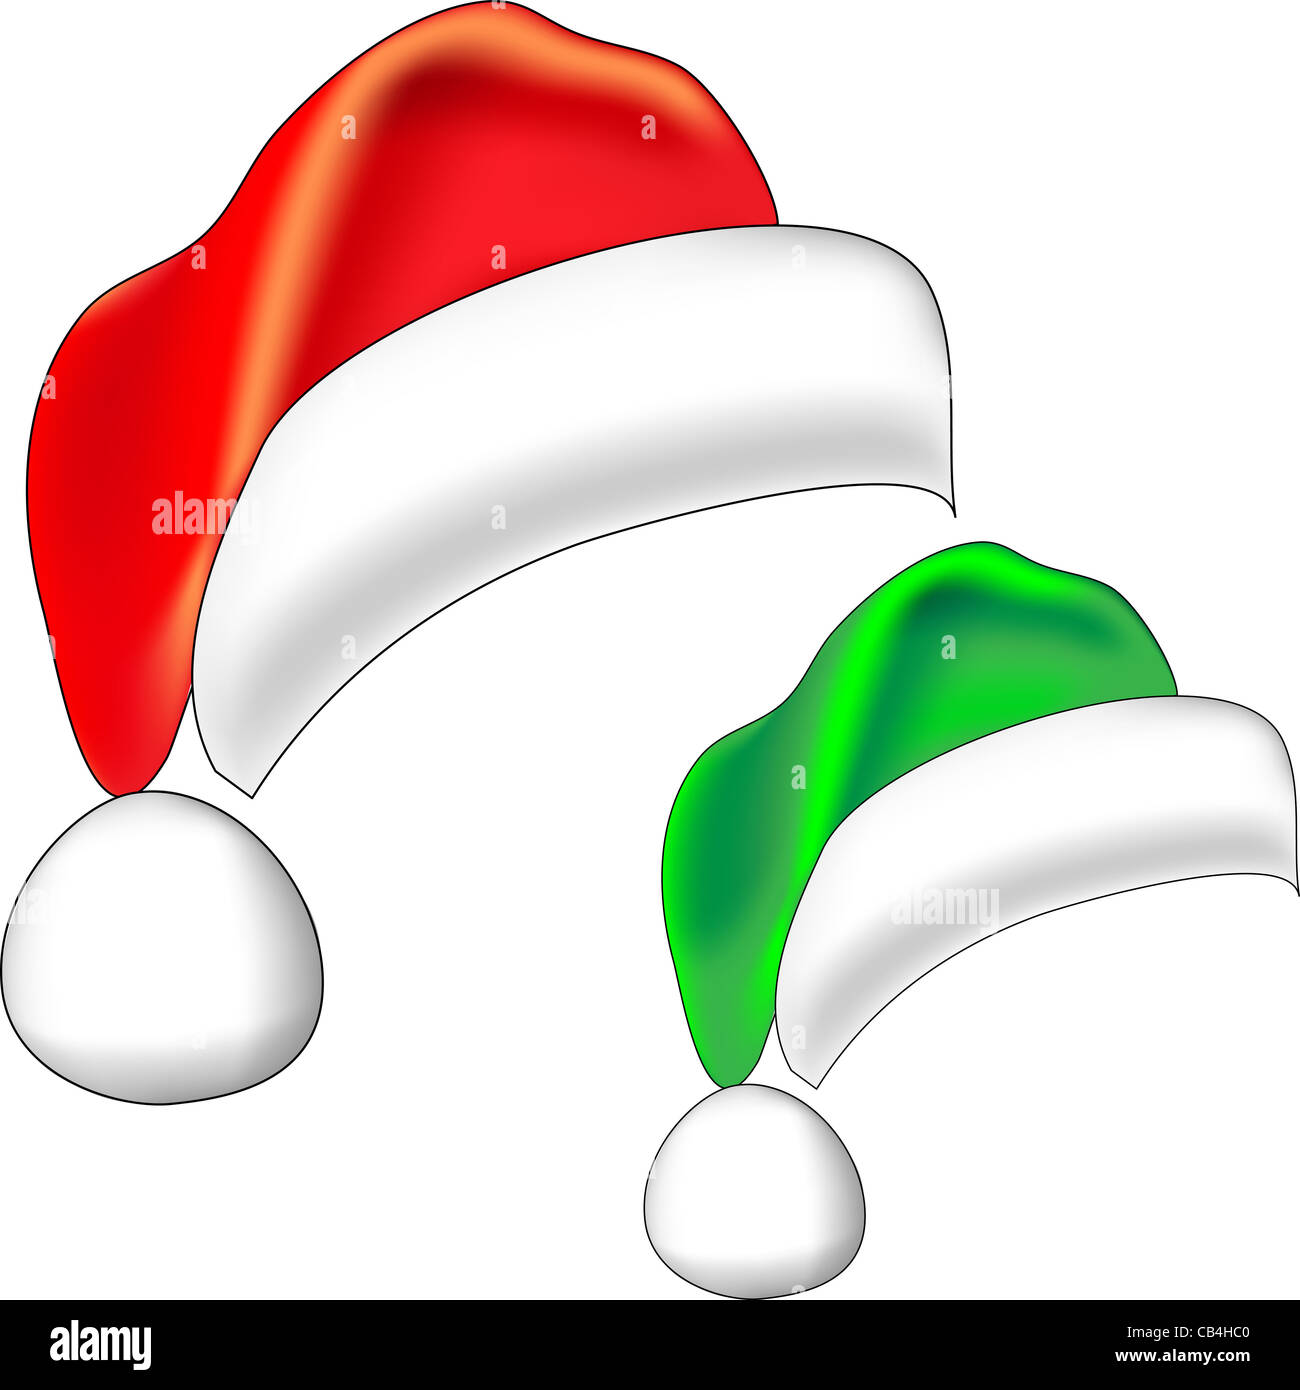 Navidad sombrero rojo de Santa Claus y la navidad elf campana verde aislado sobre fondo blanco. Foto de stock